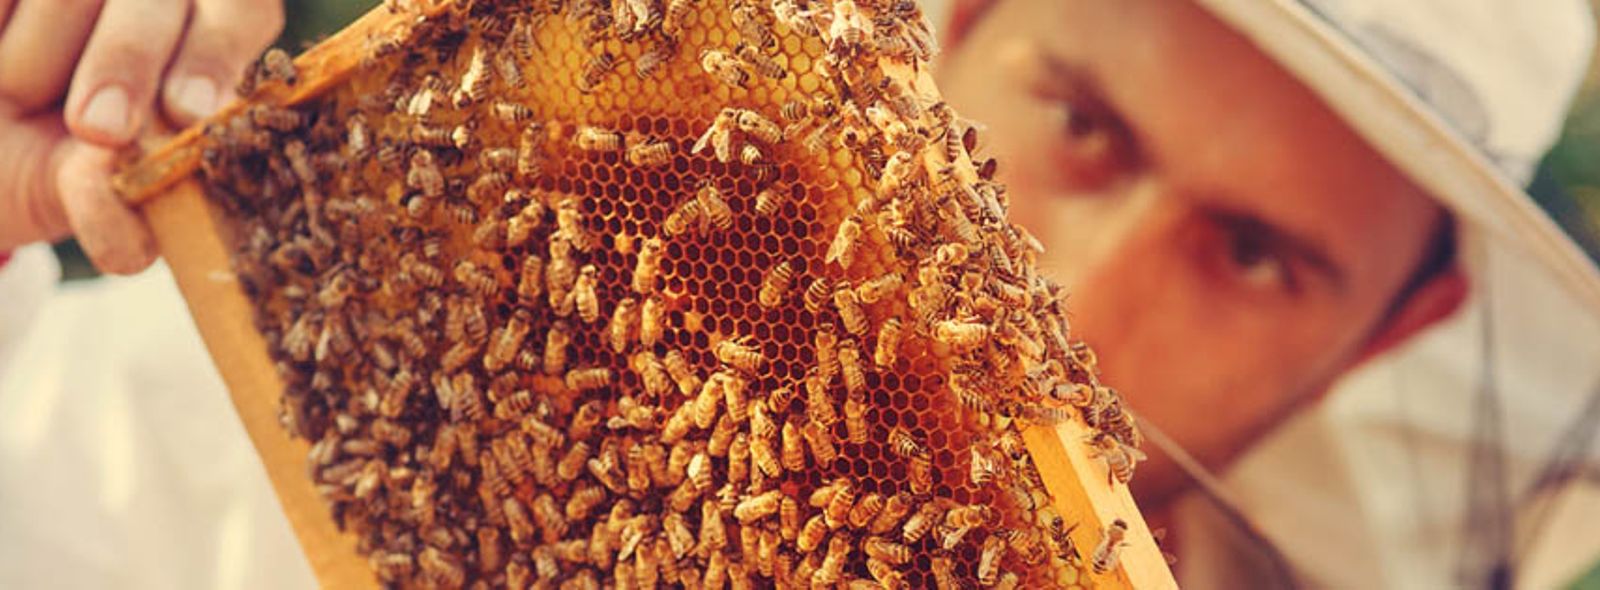 Come diventare apicoltore